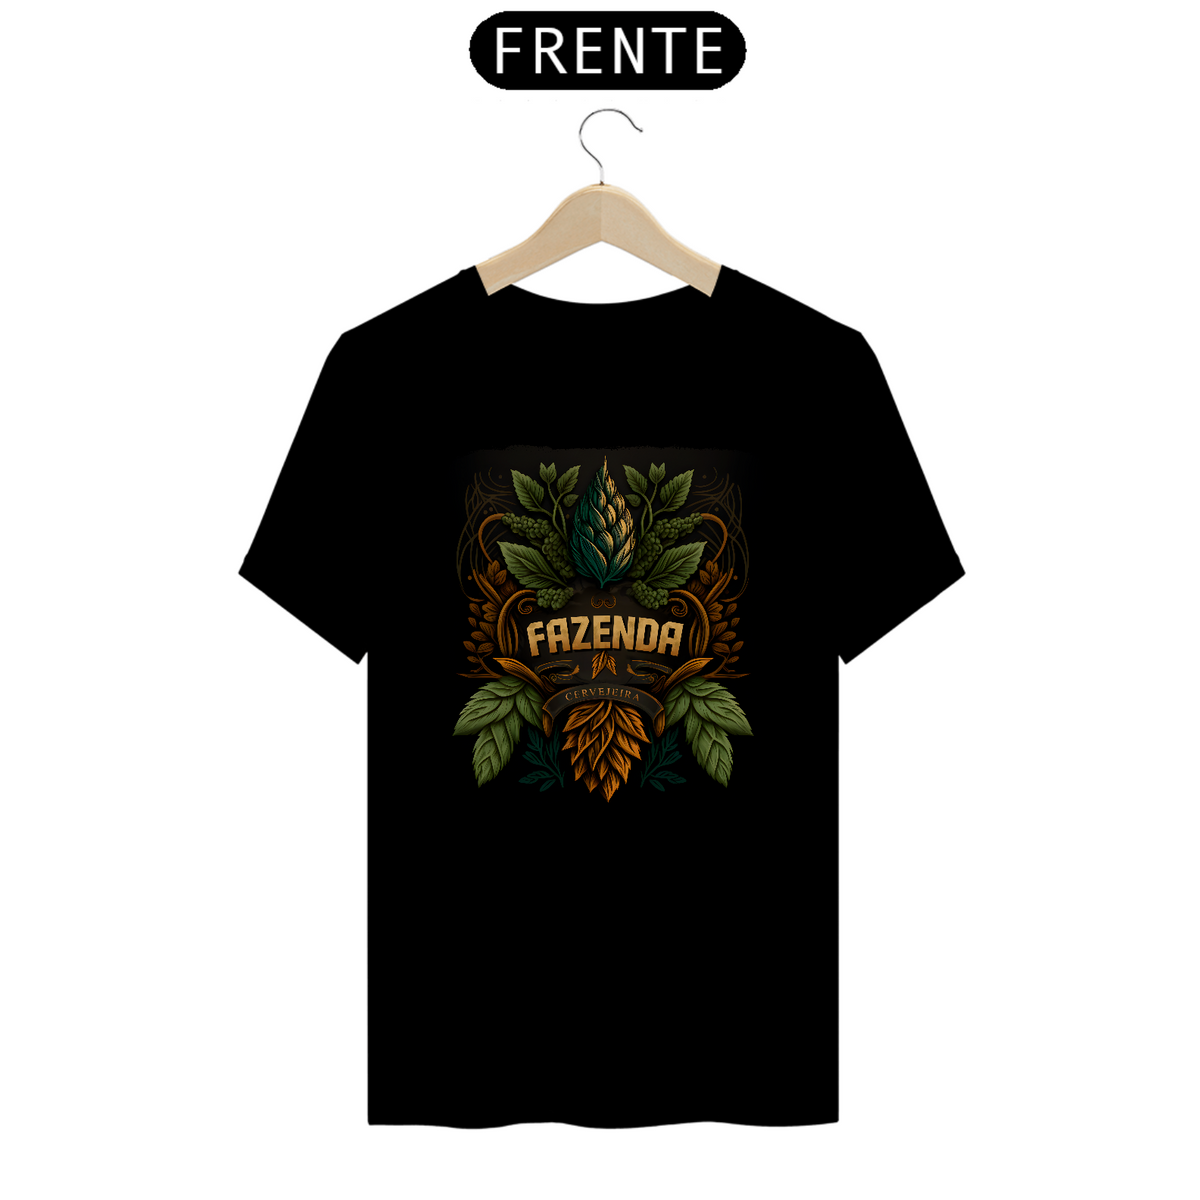 Nome do produto: Camiseta - Fazenda Cervejeira Lúpulos